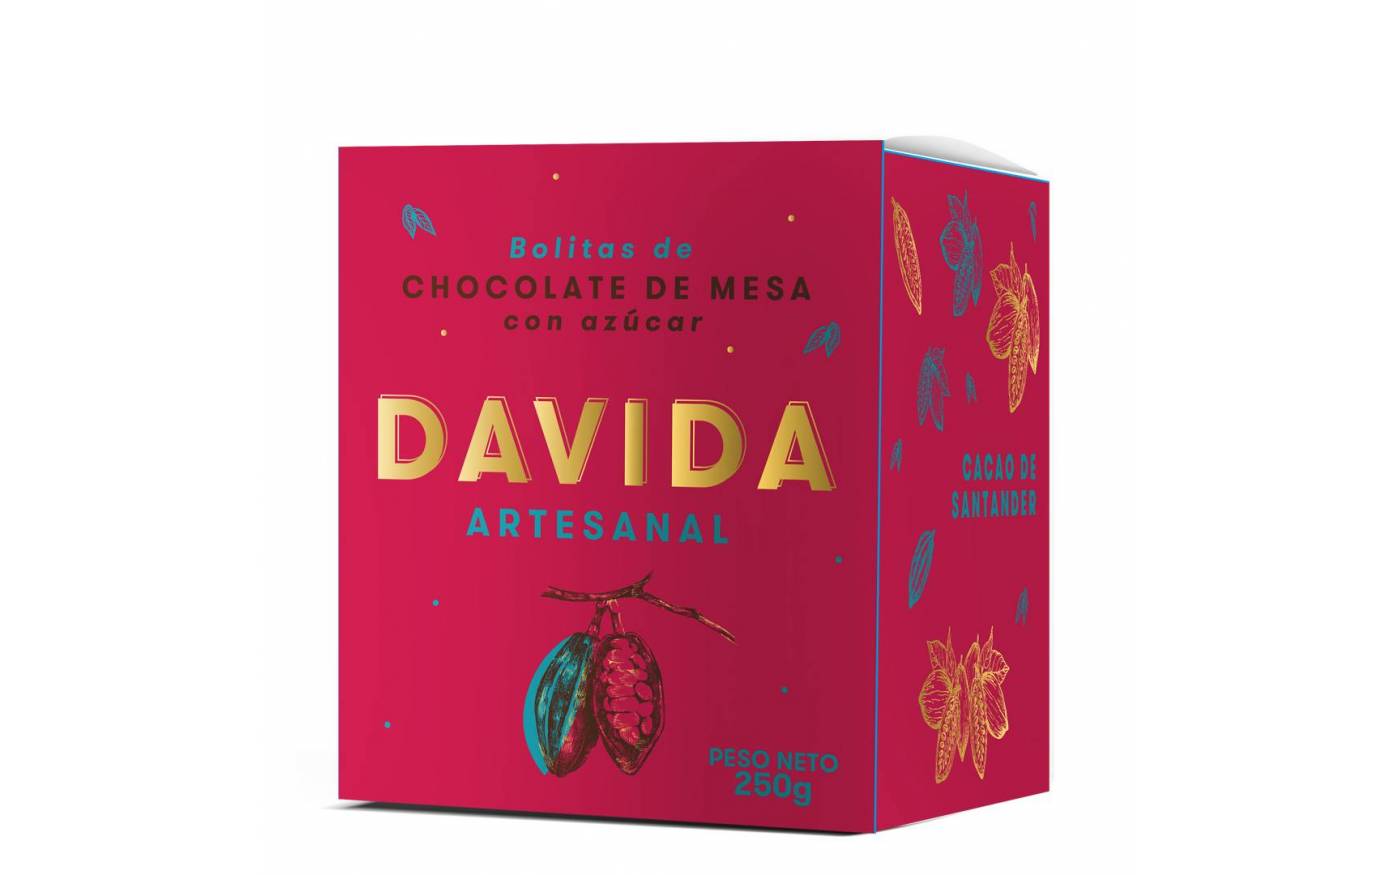 Bolitas de Chocolate de Mesa Artesanal DAVIDA